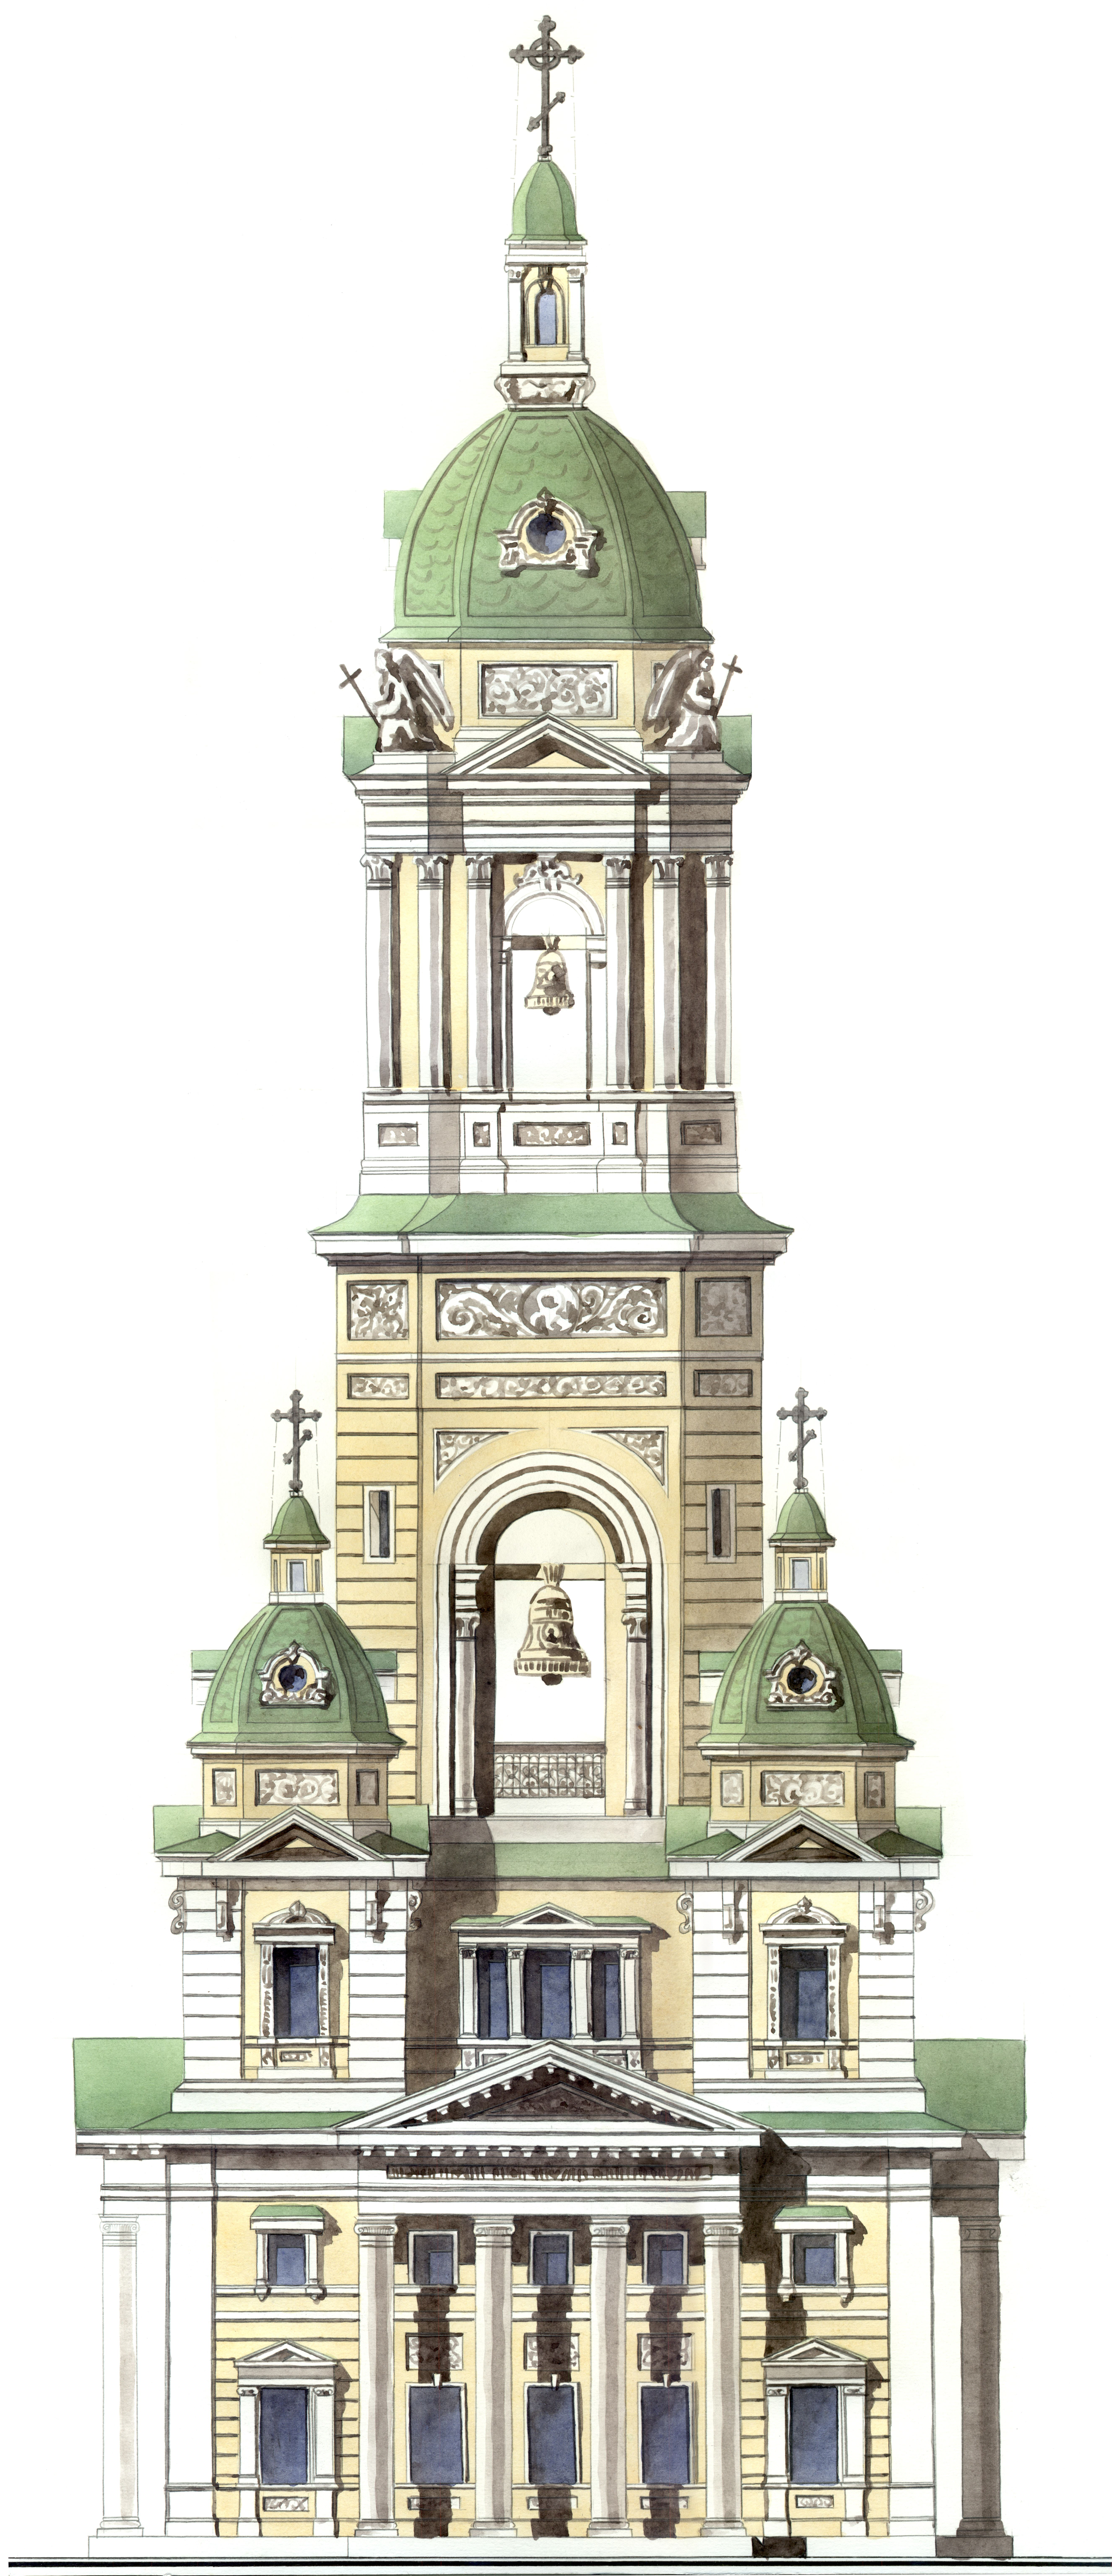 Проект на перестройку колокольни Петропавловской церкви в городе Сарапуле архитектора А. Б. Турчевича-Глумова. 1902 год